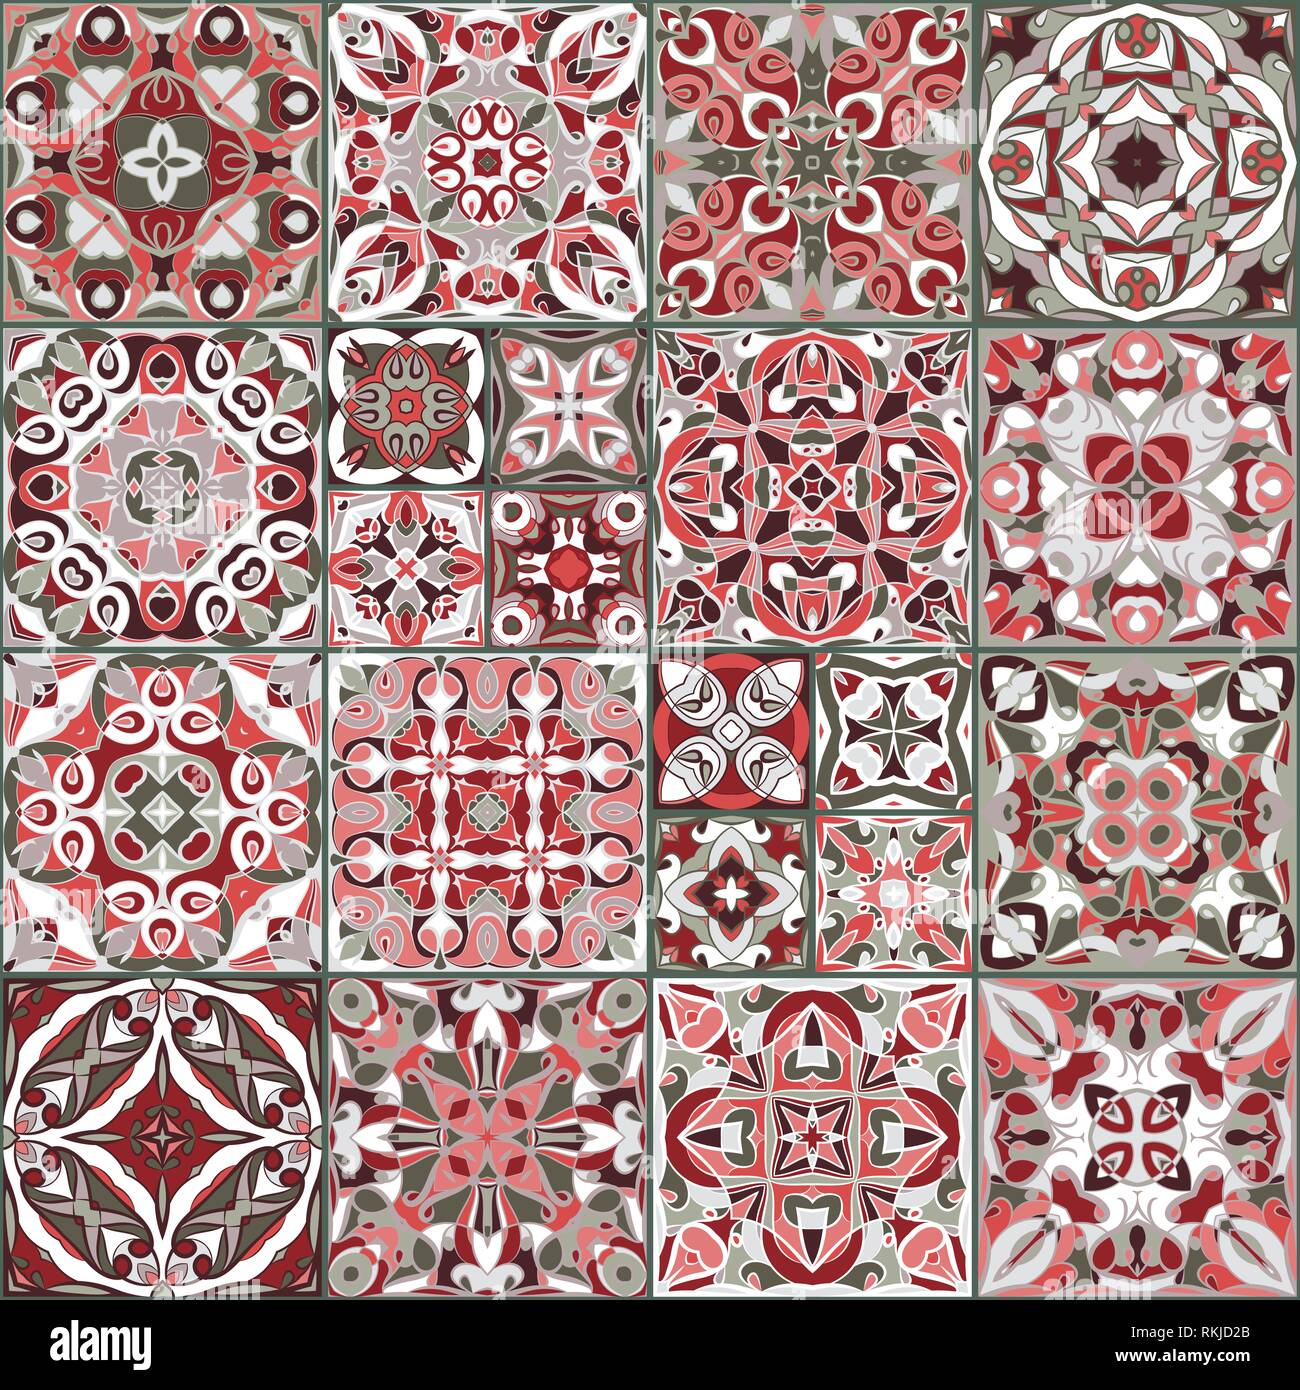 Eine Sammlung von Keramikfliesen in roten Farben. Eine Reihe von quadratischen Muster im ethnischen Stil. Vector Illustration. Stock Vektor